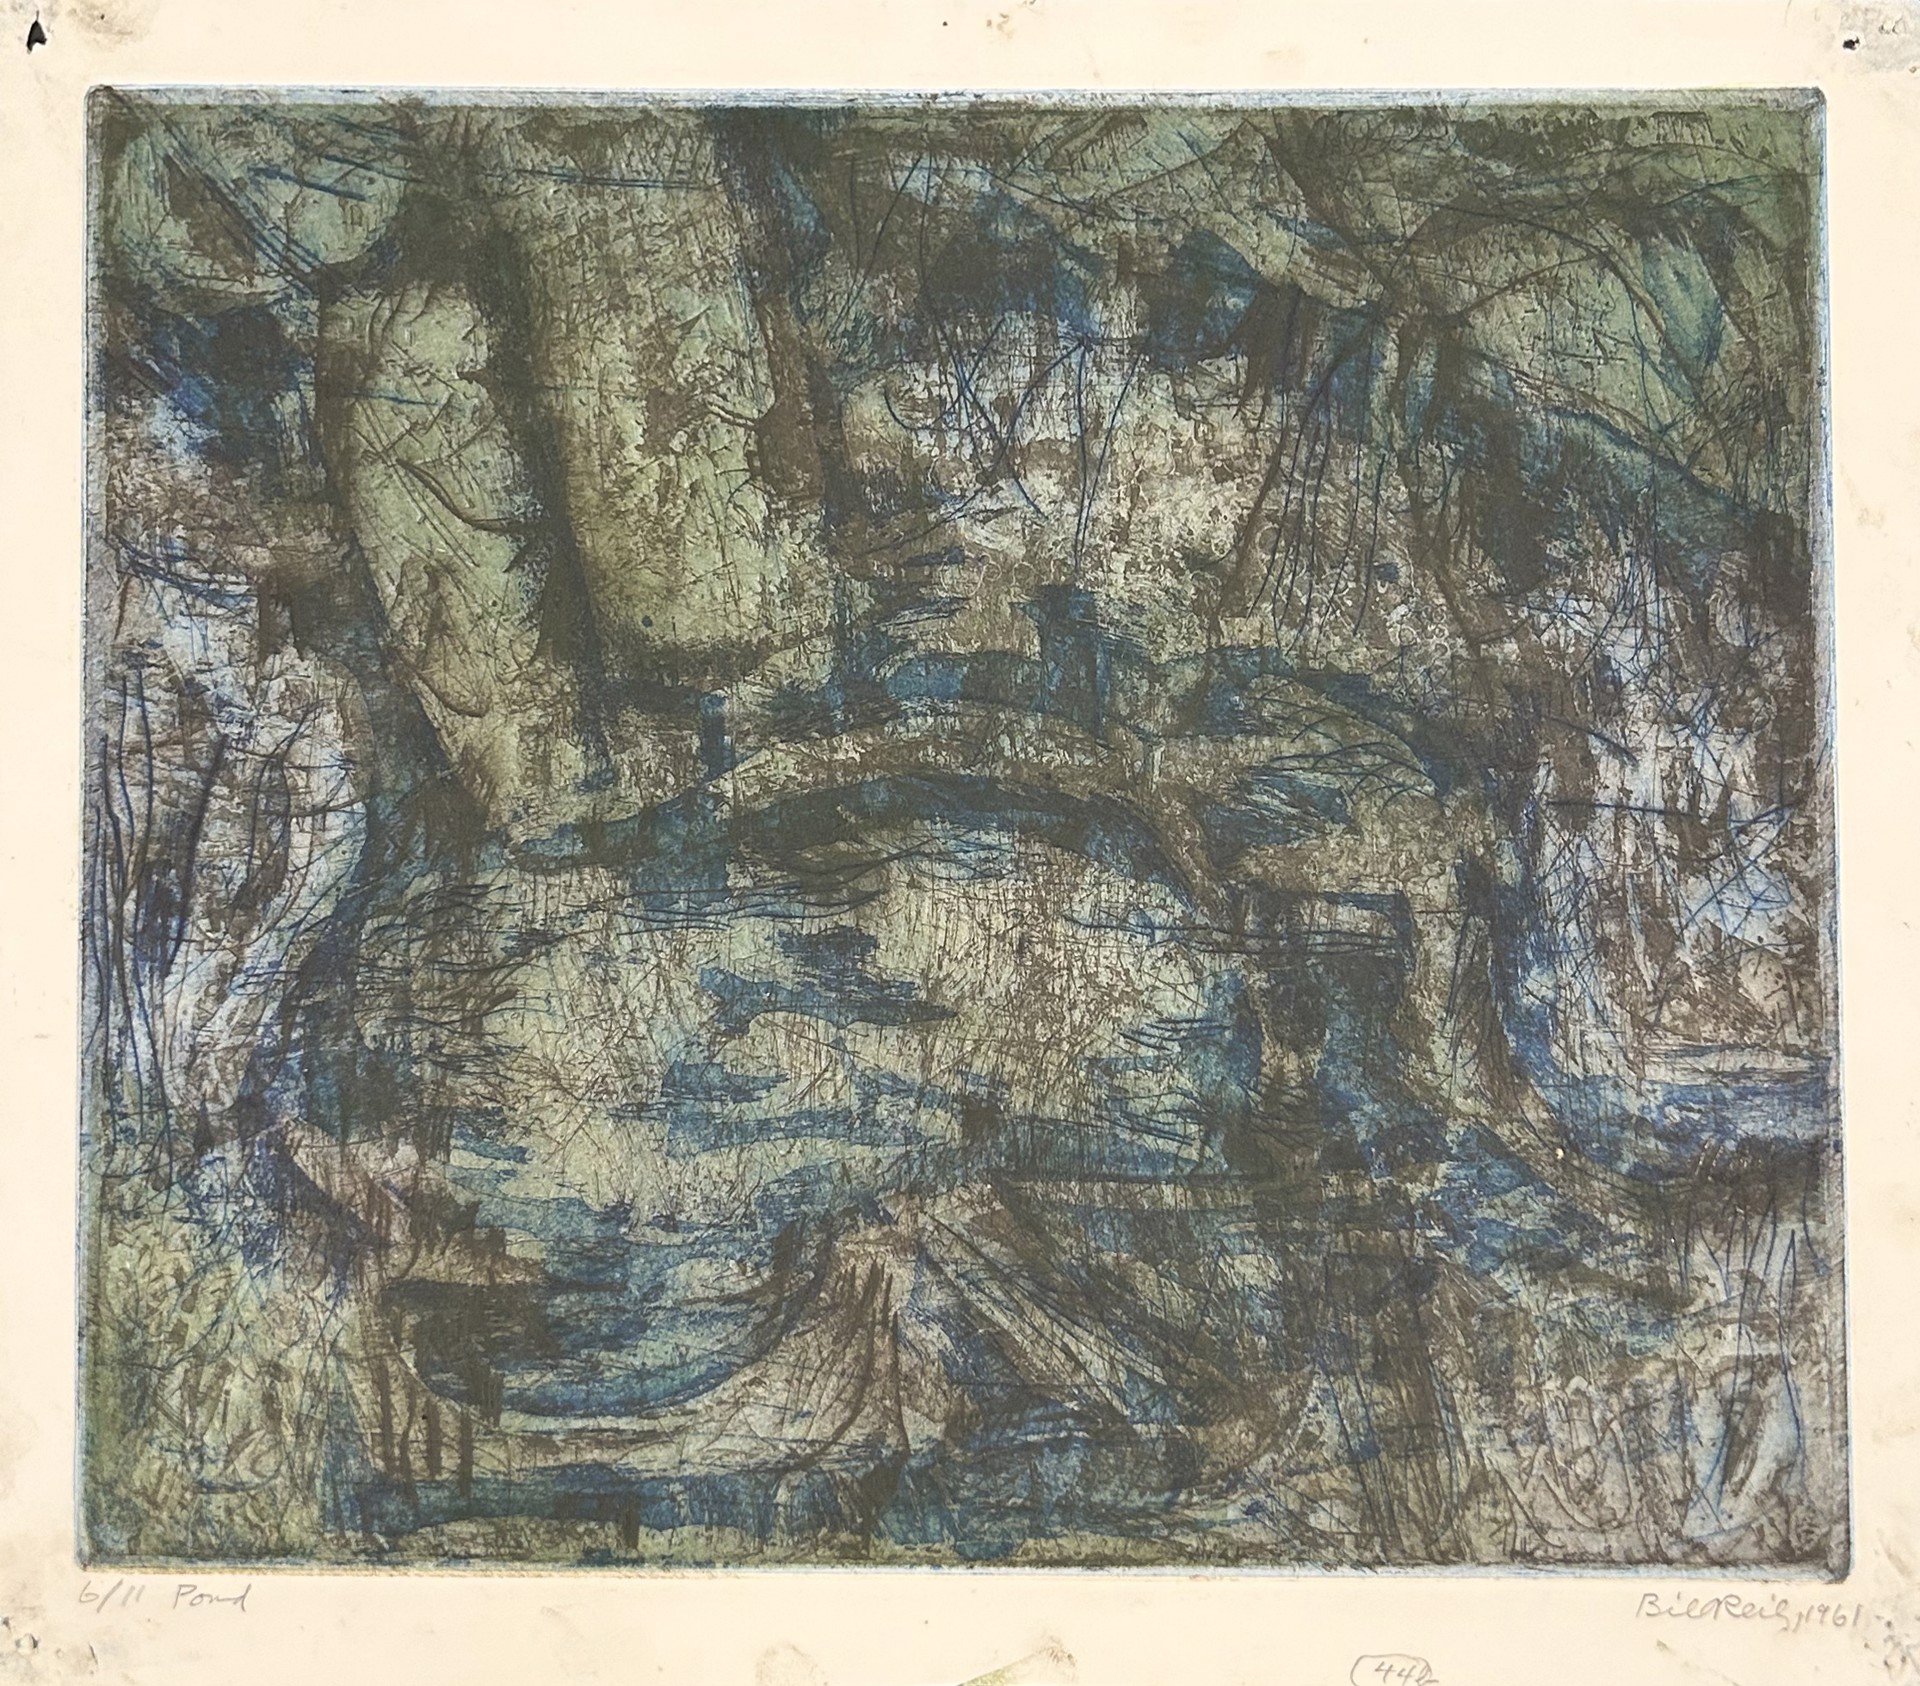 44b(ii). Pond by Bill Reily Prints